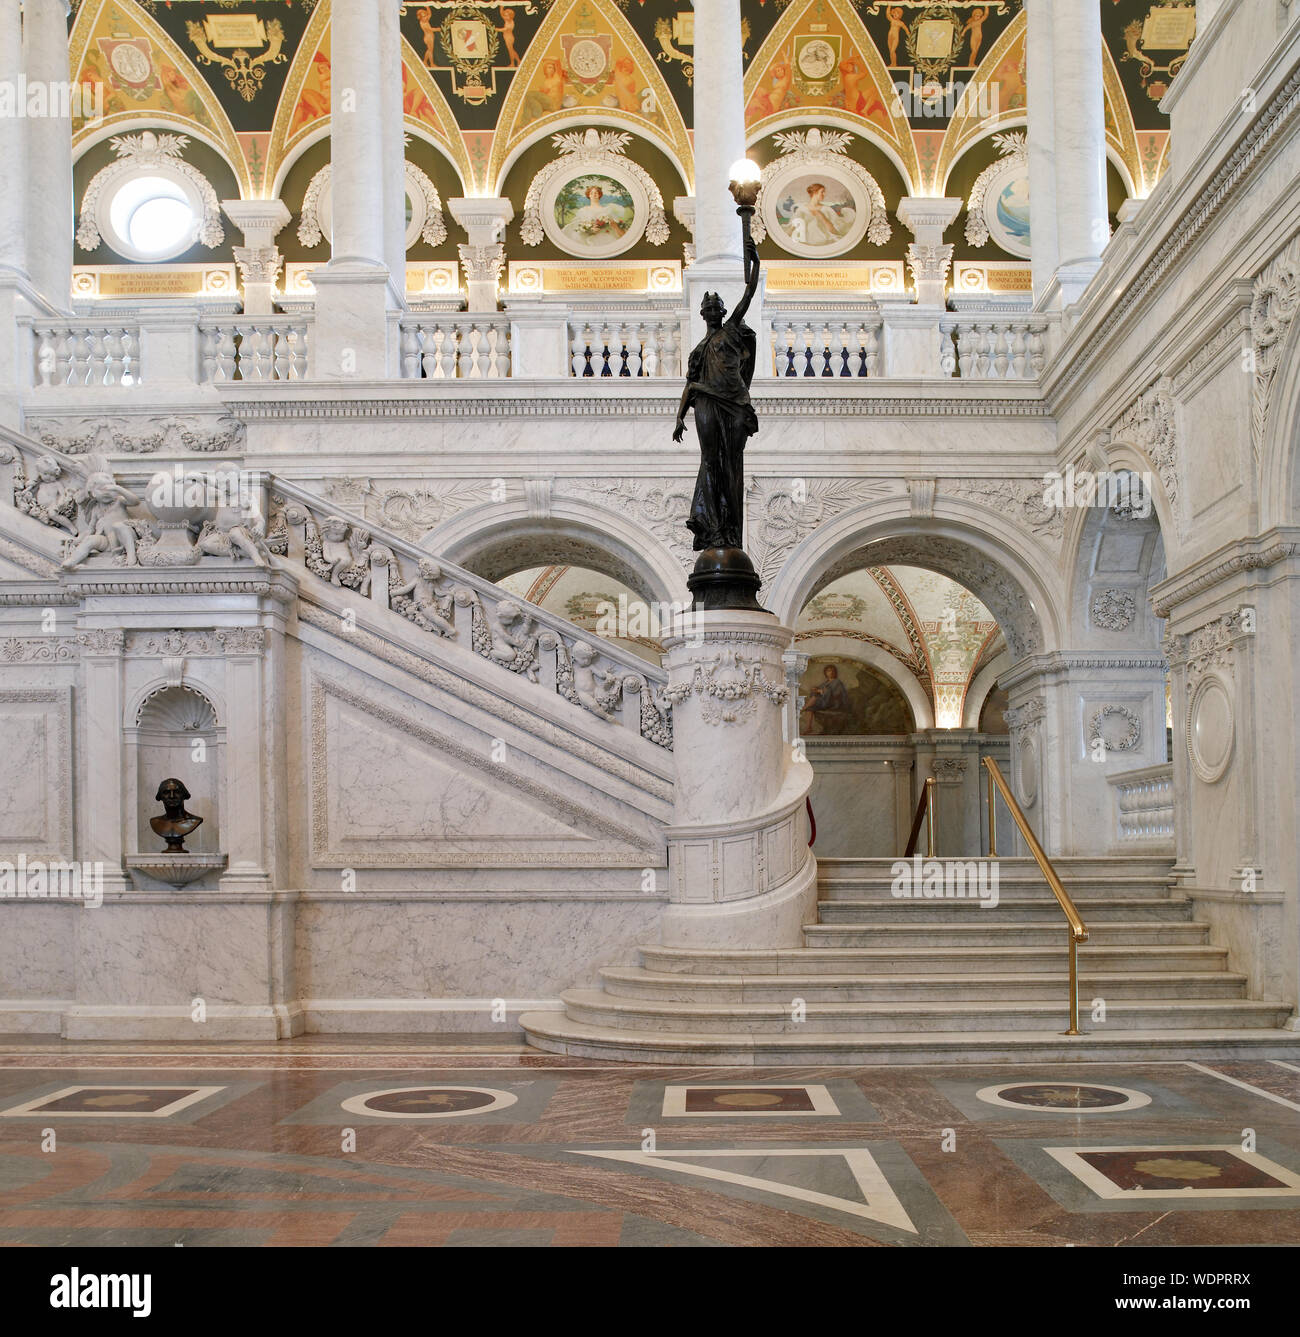 Große Halle. Blick auf die große Treppe und Bronze Statue der weiblichen Figur auf newel post Holding eine Fackel der elektrisches Licht, mit Büste von George Washington auf der linken Seite. Bibliothek des Kongresses Thomas Jefferson, Washington, D.C. Stockfoto